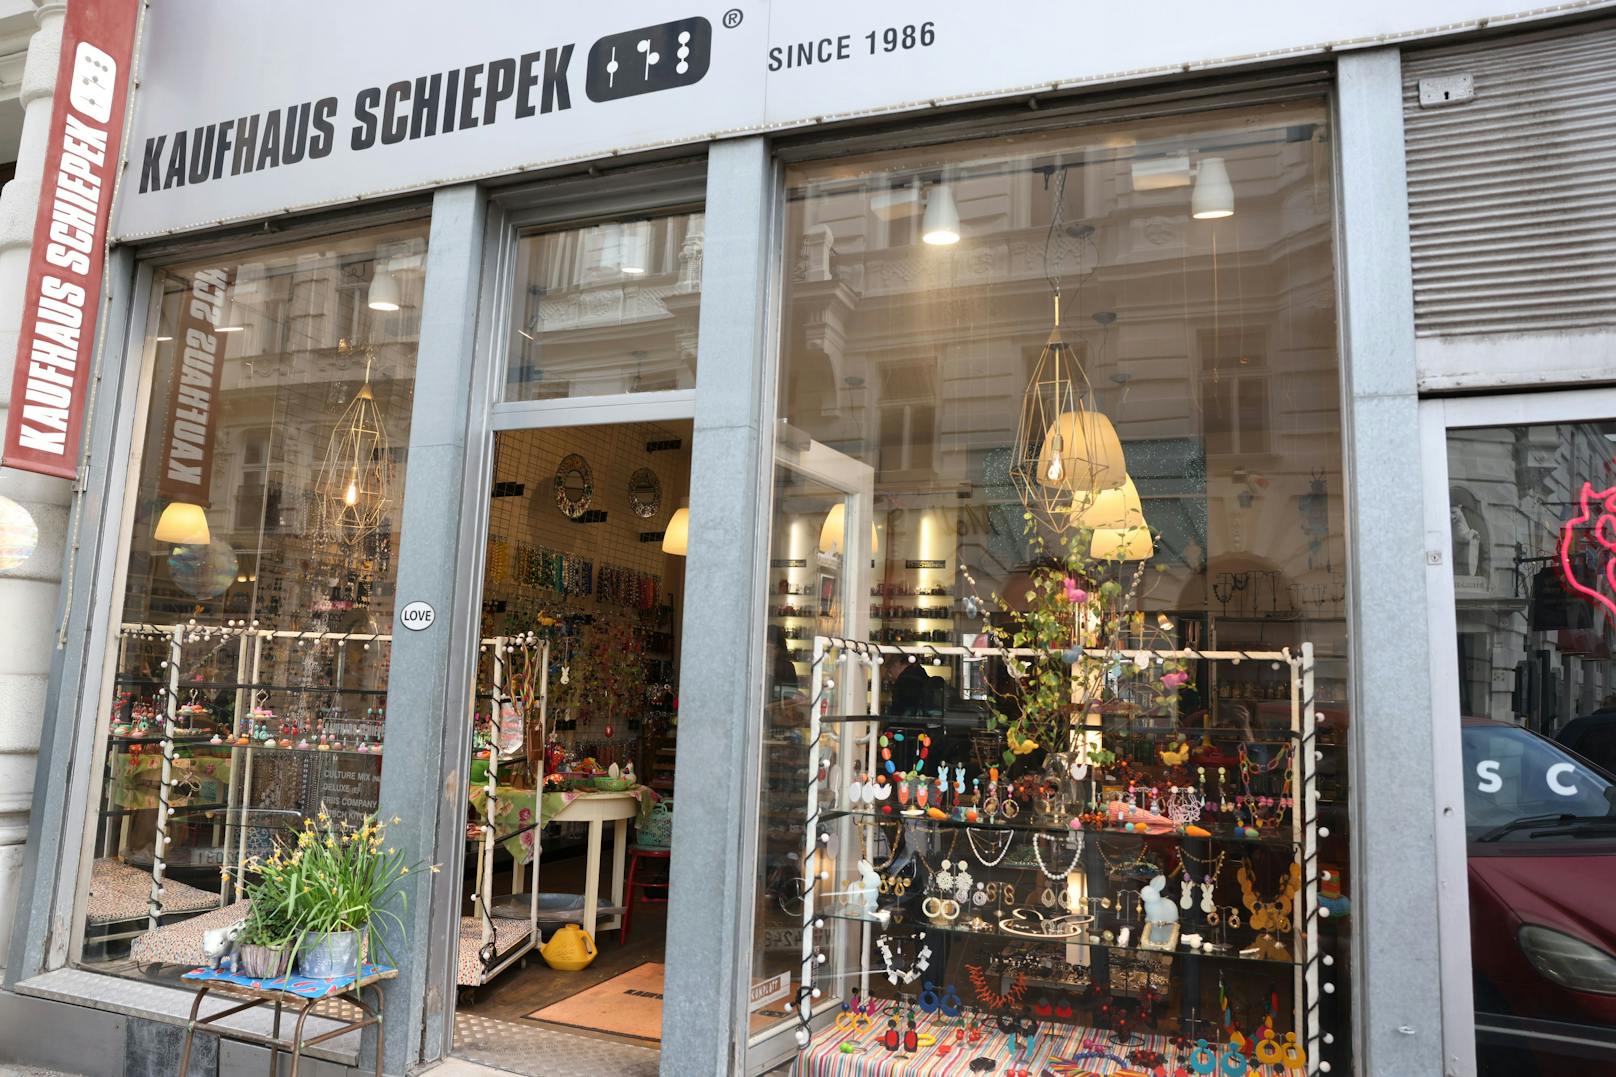 Kaufhaus Schiepek - seit 1986 in der Teintfaltgasse 3 im ersten Bezirk